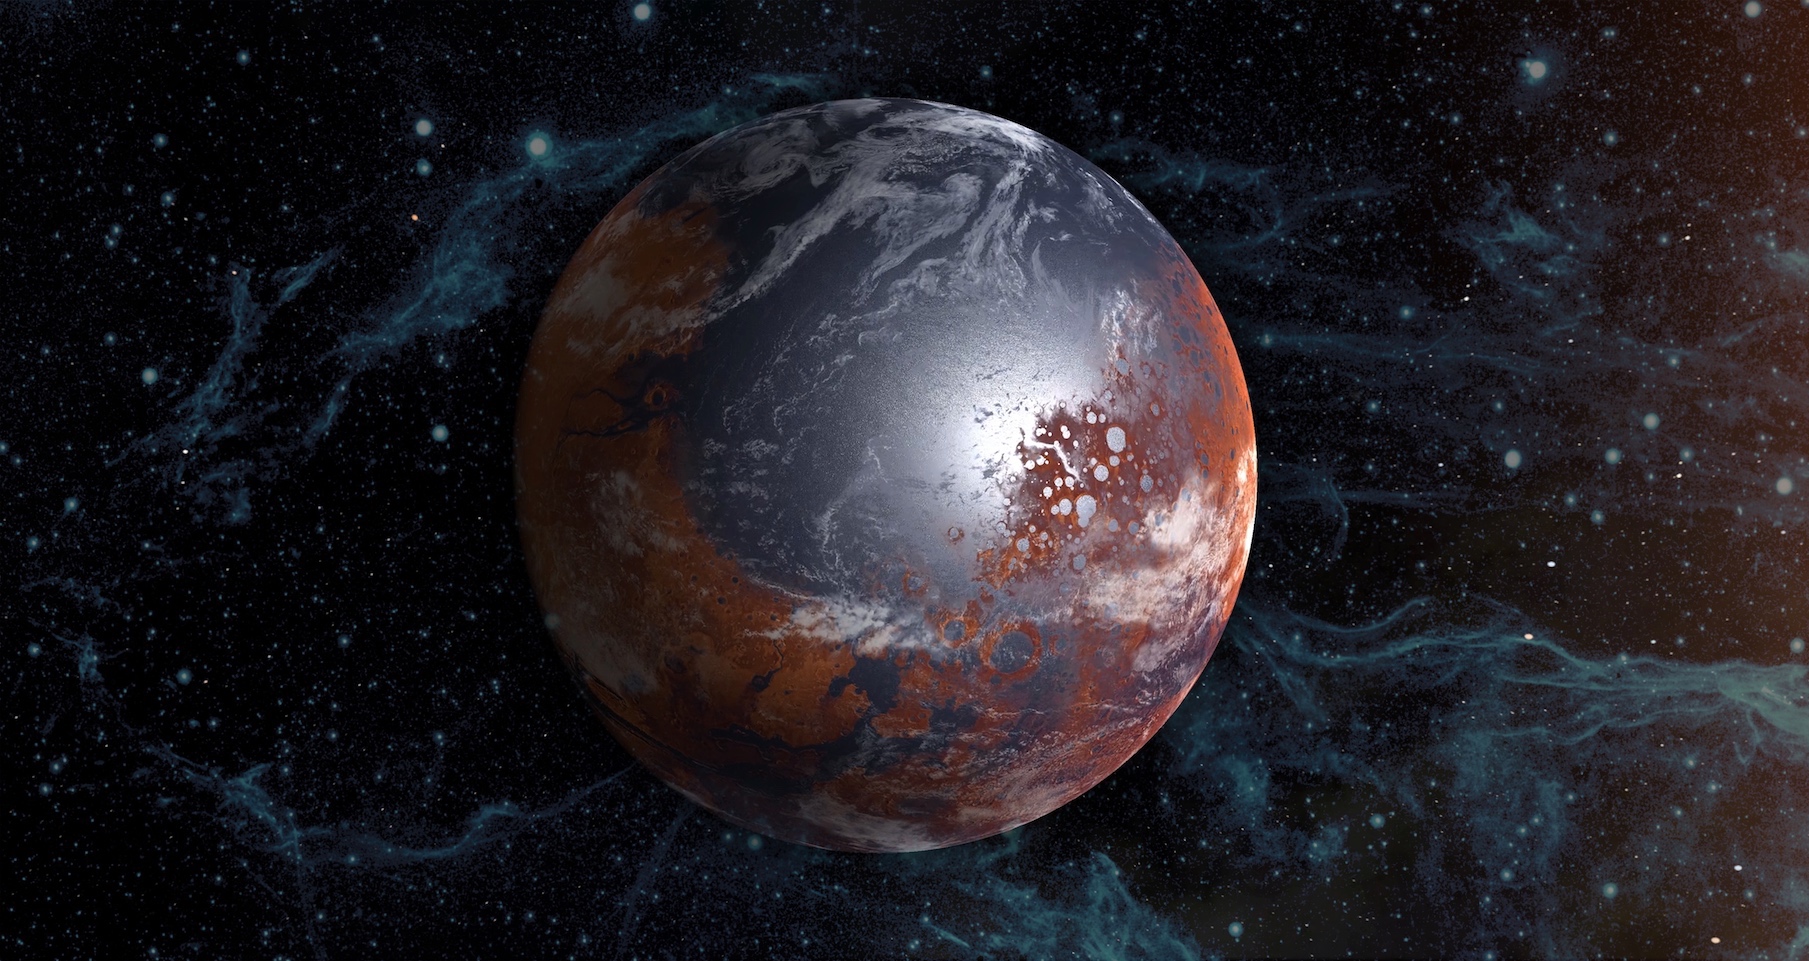 Le climat qui règne sur Mars que nous connaissons aujourd’hui est sans rapport avec celui qui régnait sur la Planète rouge. Des microbes pourraient être responsables de ce changement. © elen31, Adobe Stock